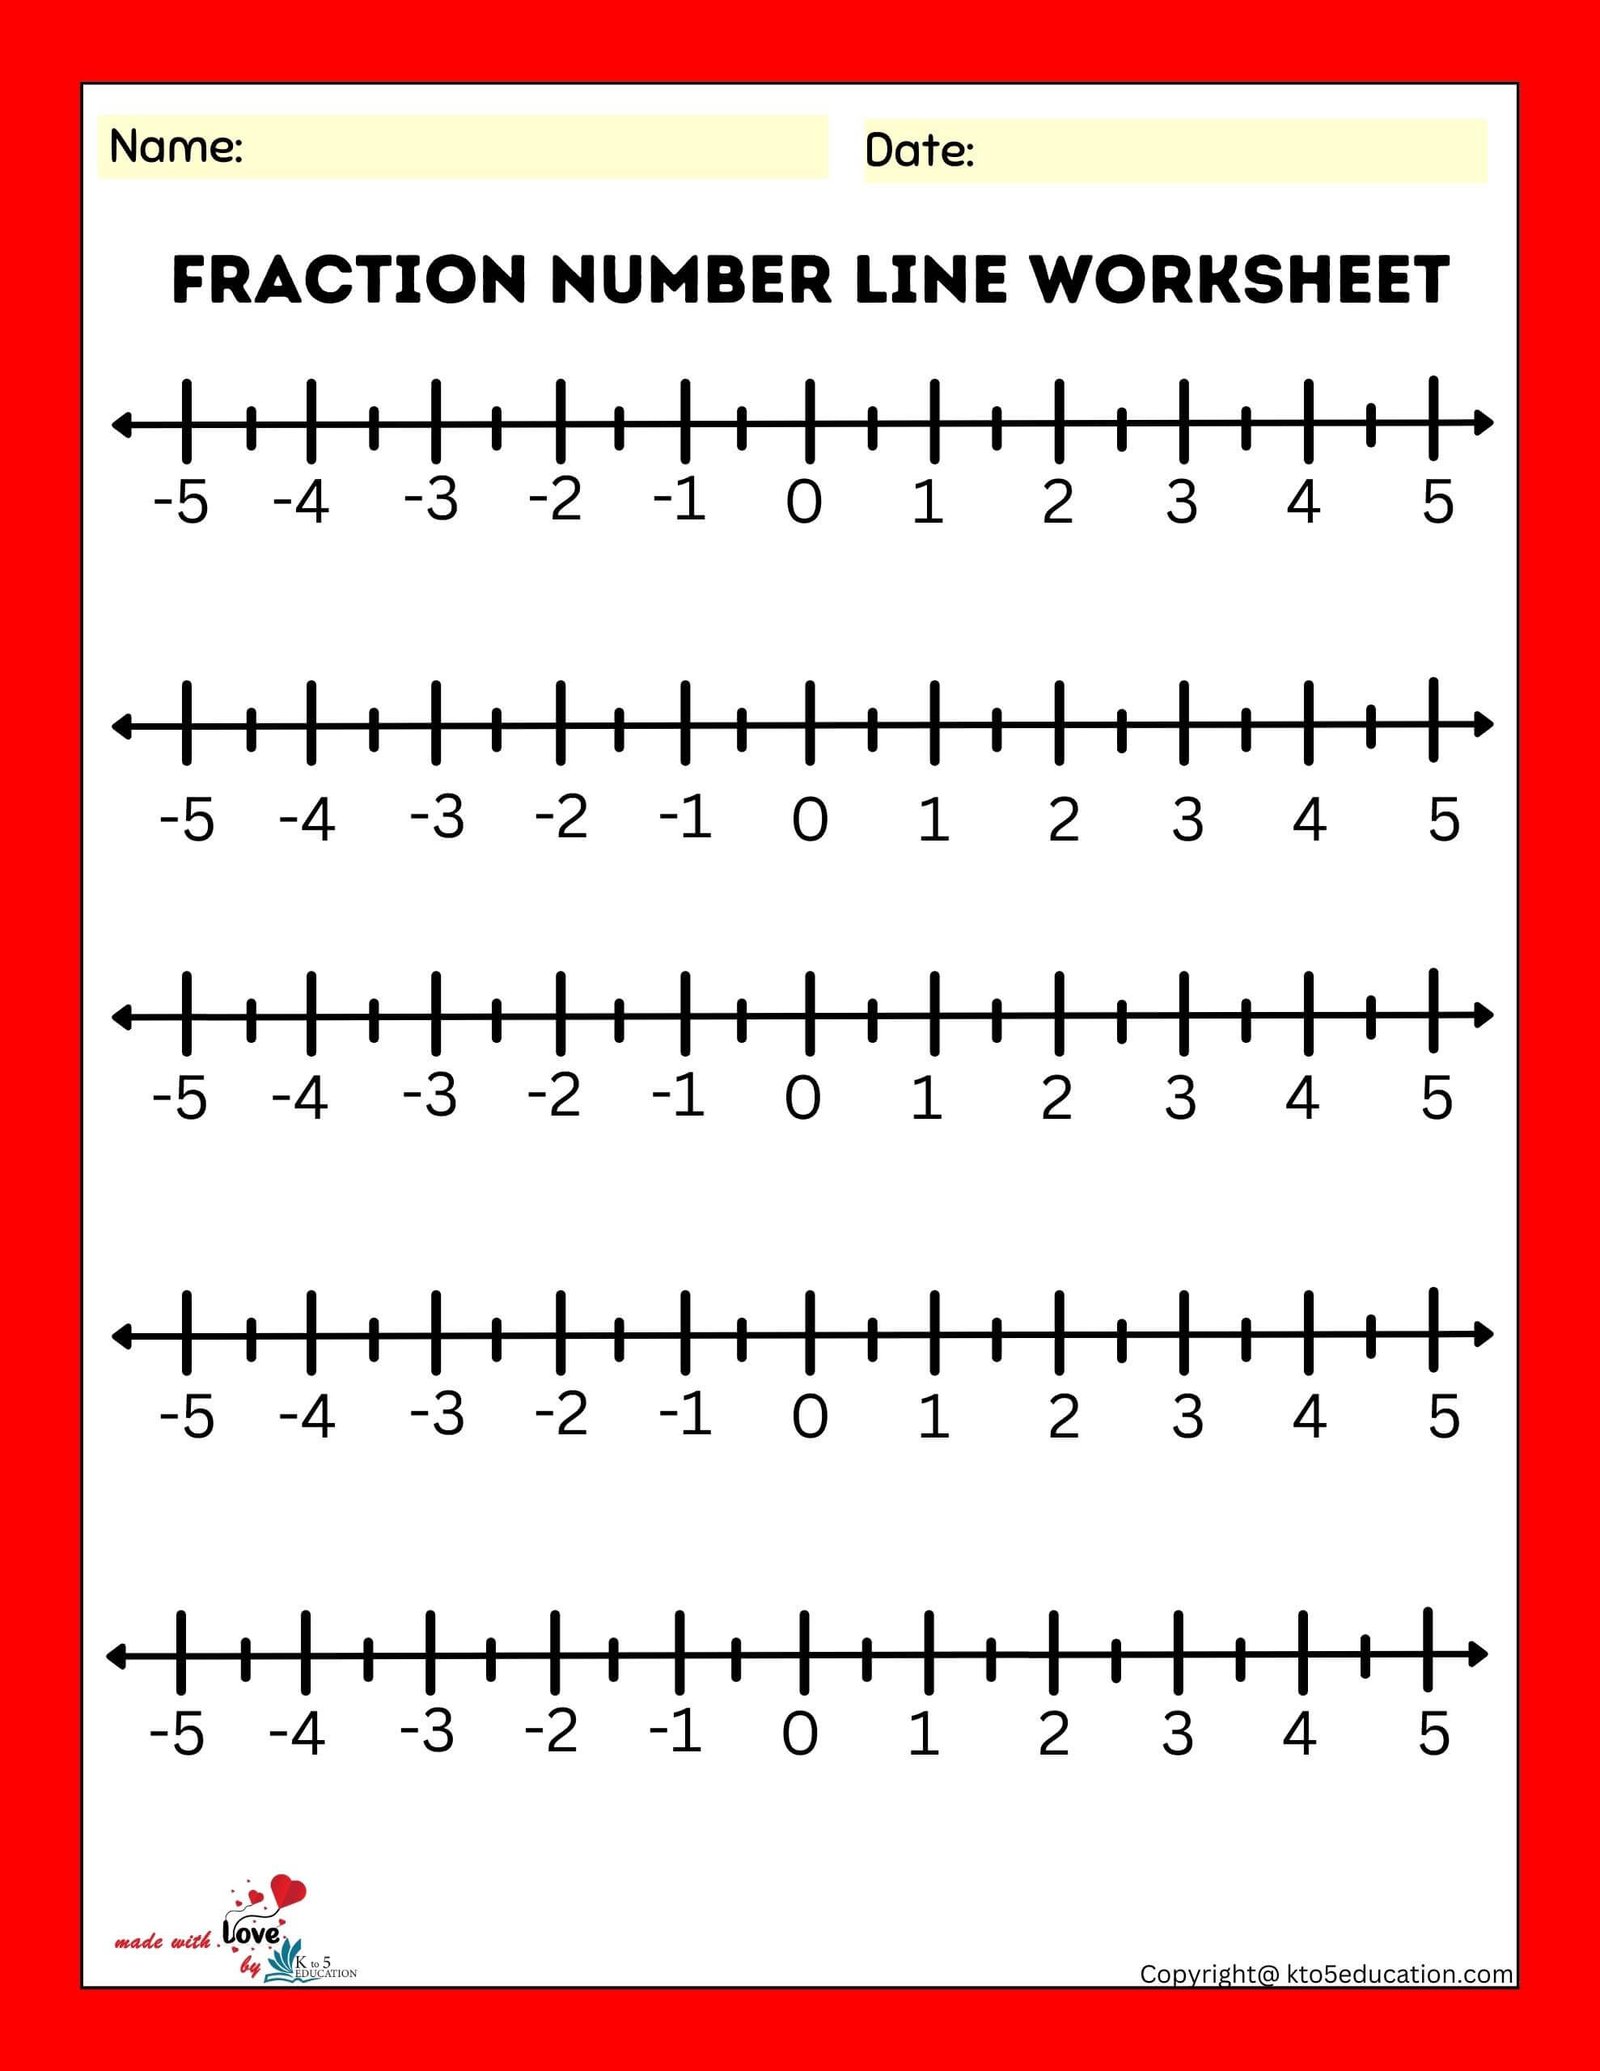 Fraction Number Line Worksheet FREE Download